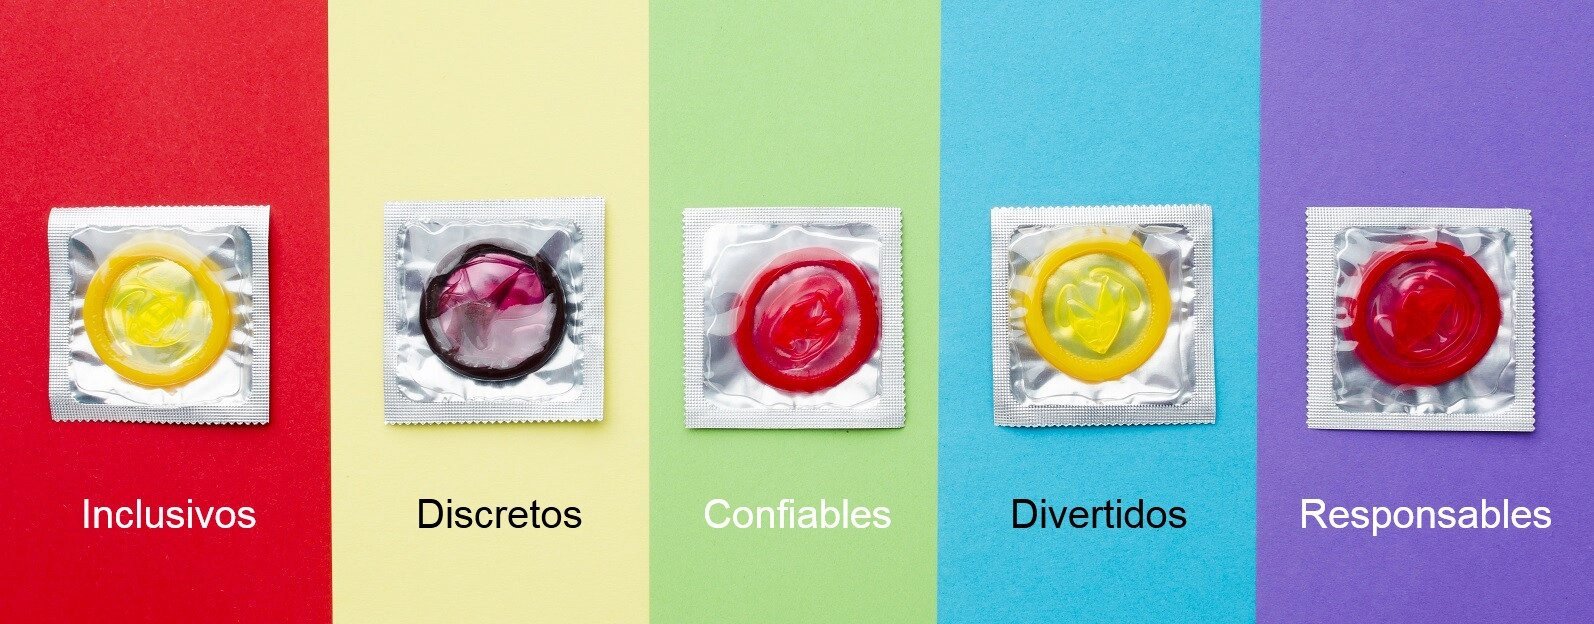 condones